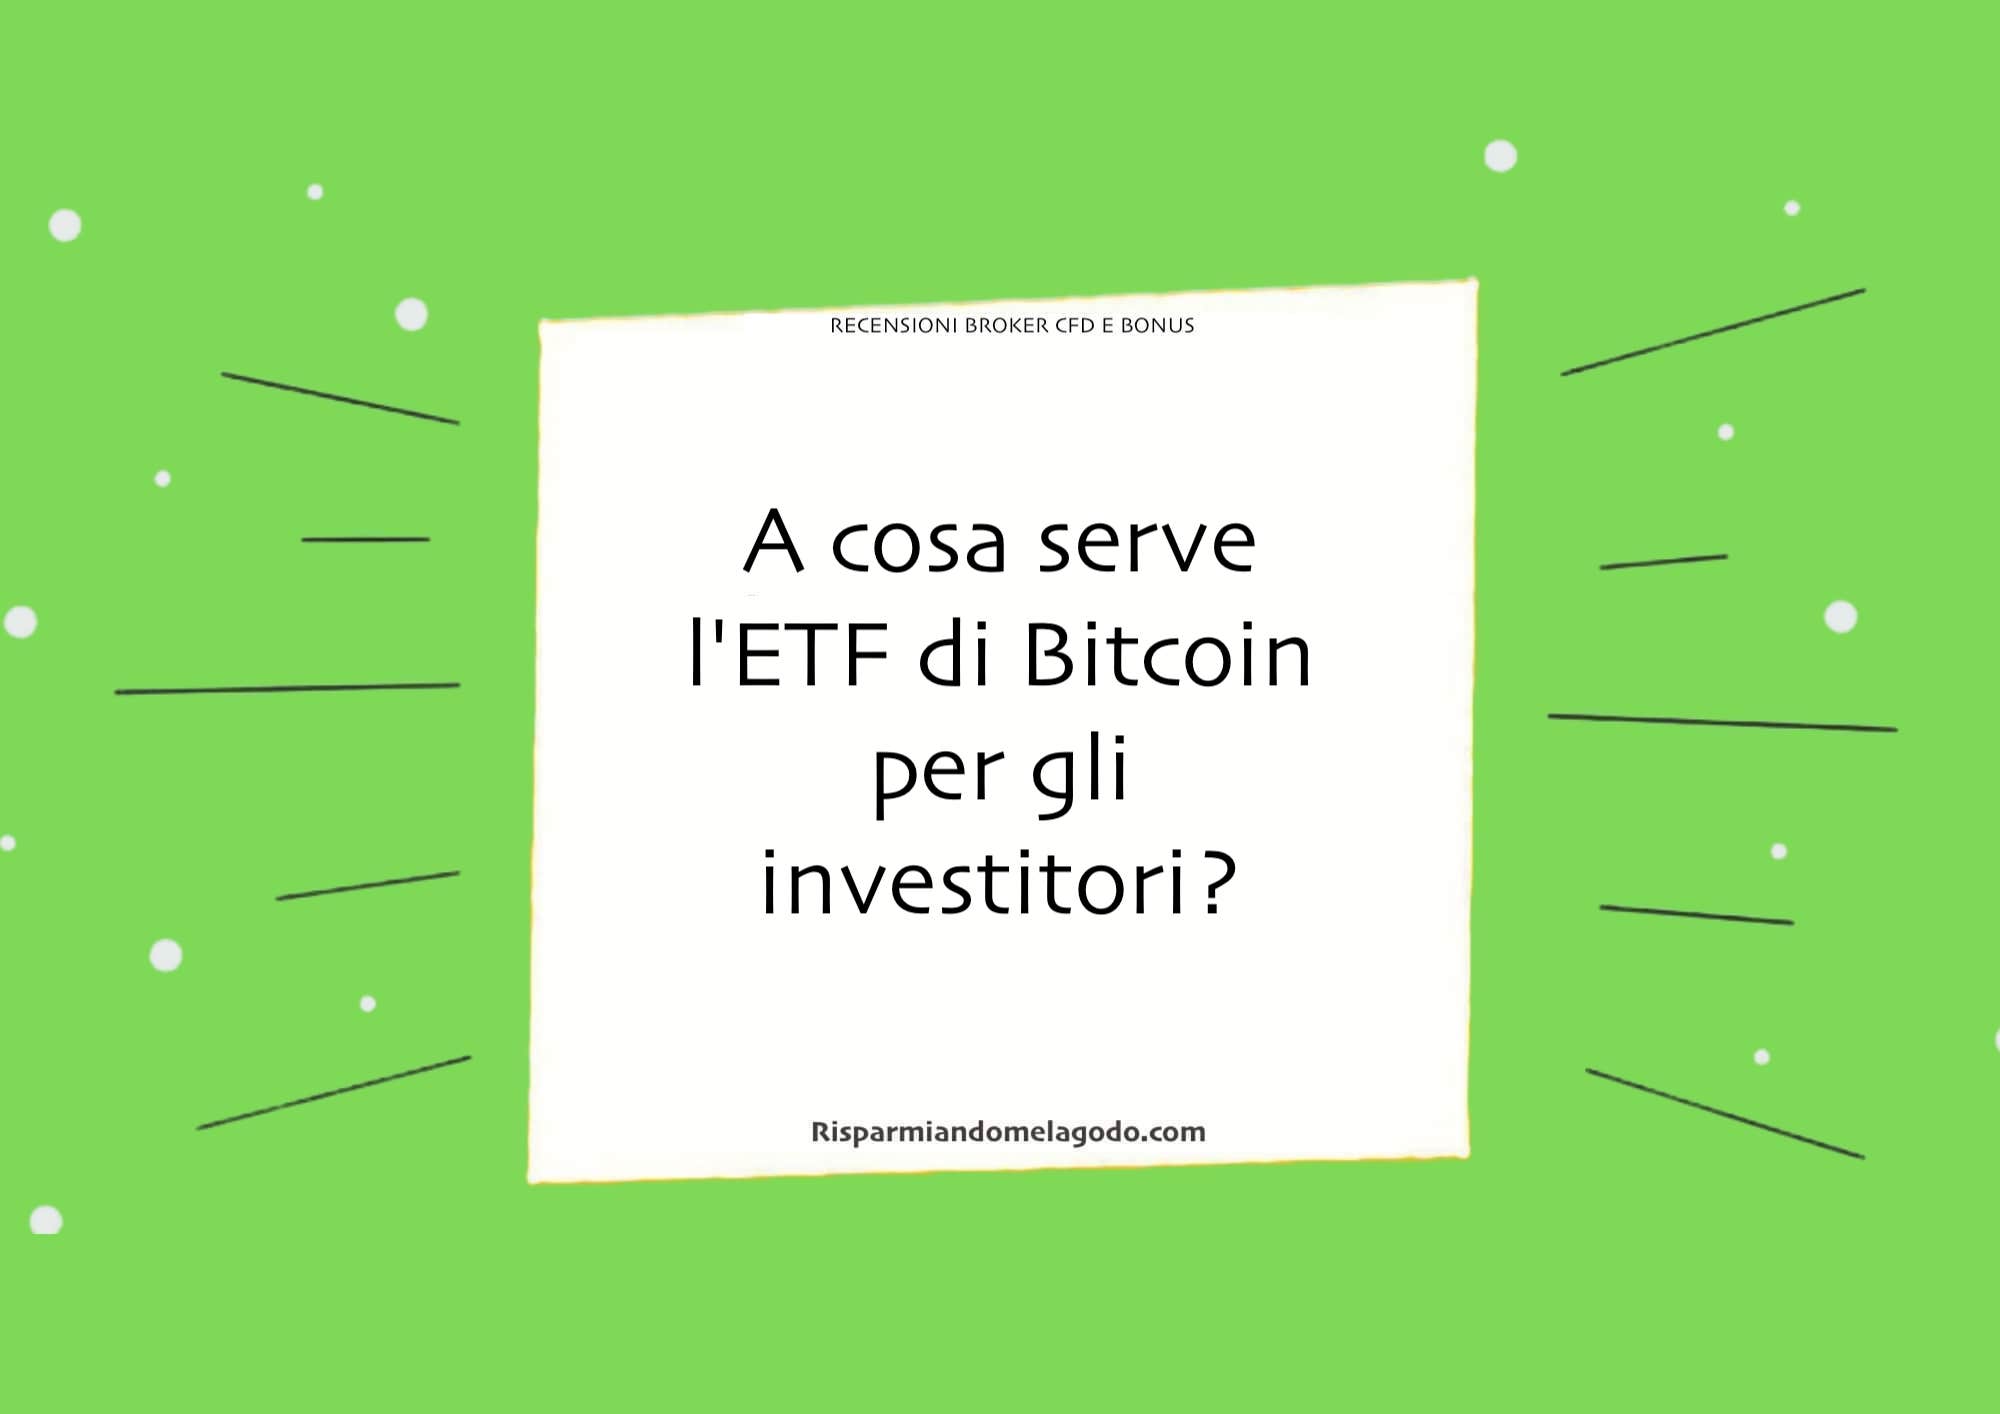 A cosa serve l'ETF di Bitcoin per gli investitori?